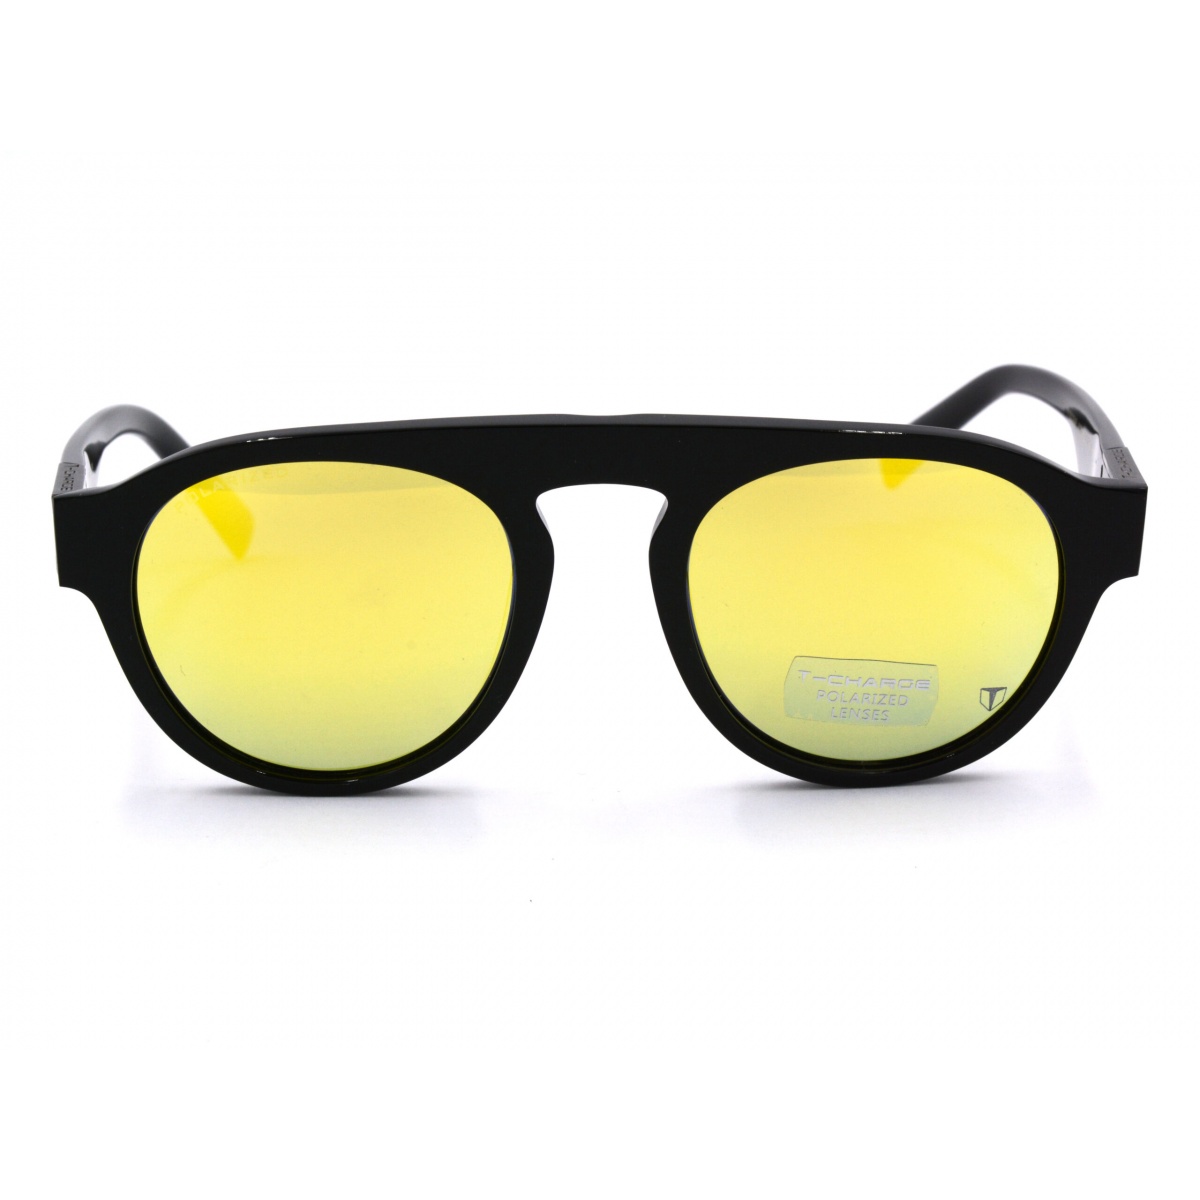 Γυαλιά ηλίου T-CHARGE T9062 A02 50-21-150